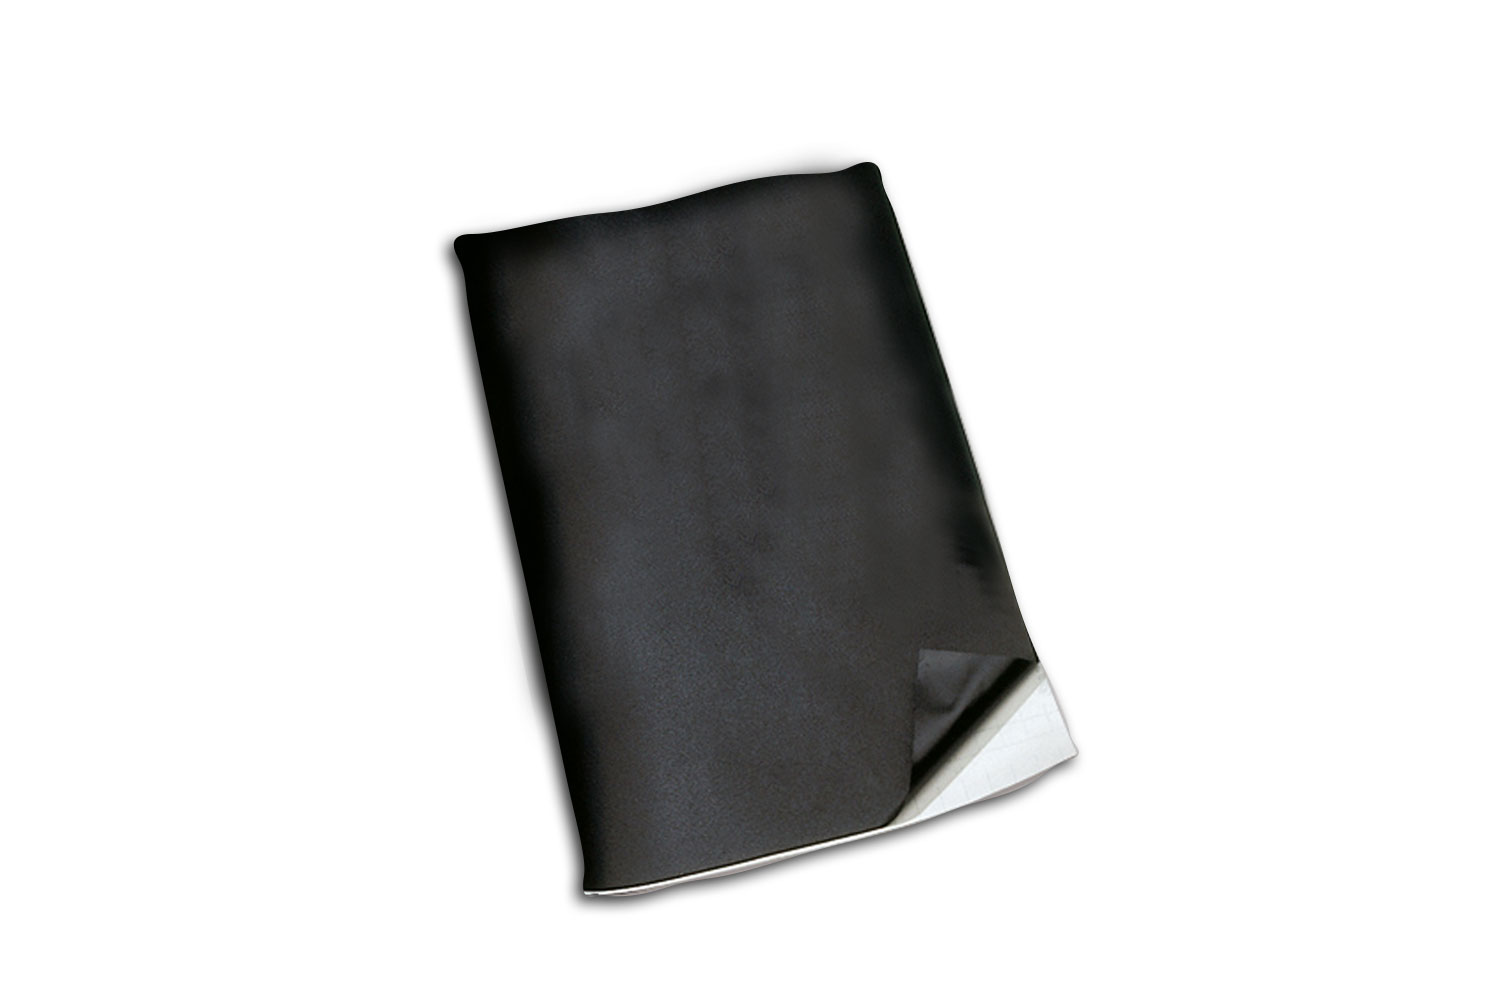 Tableau noir magnétique effaçable à sec pour réfrigérateur - 43,2 x 27,9 cm  - Facile à